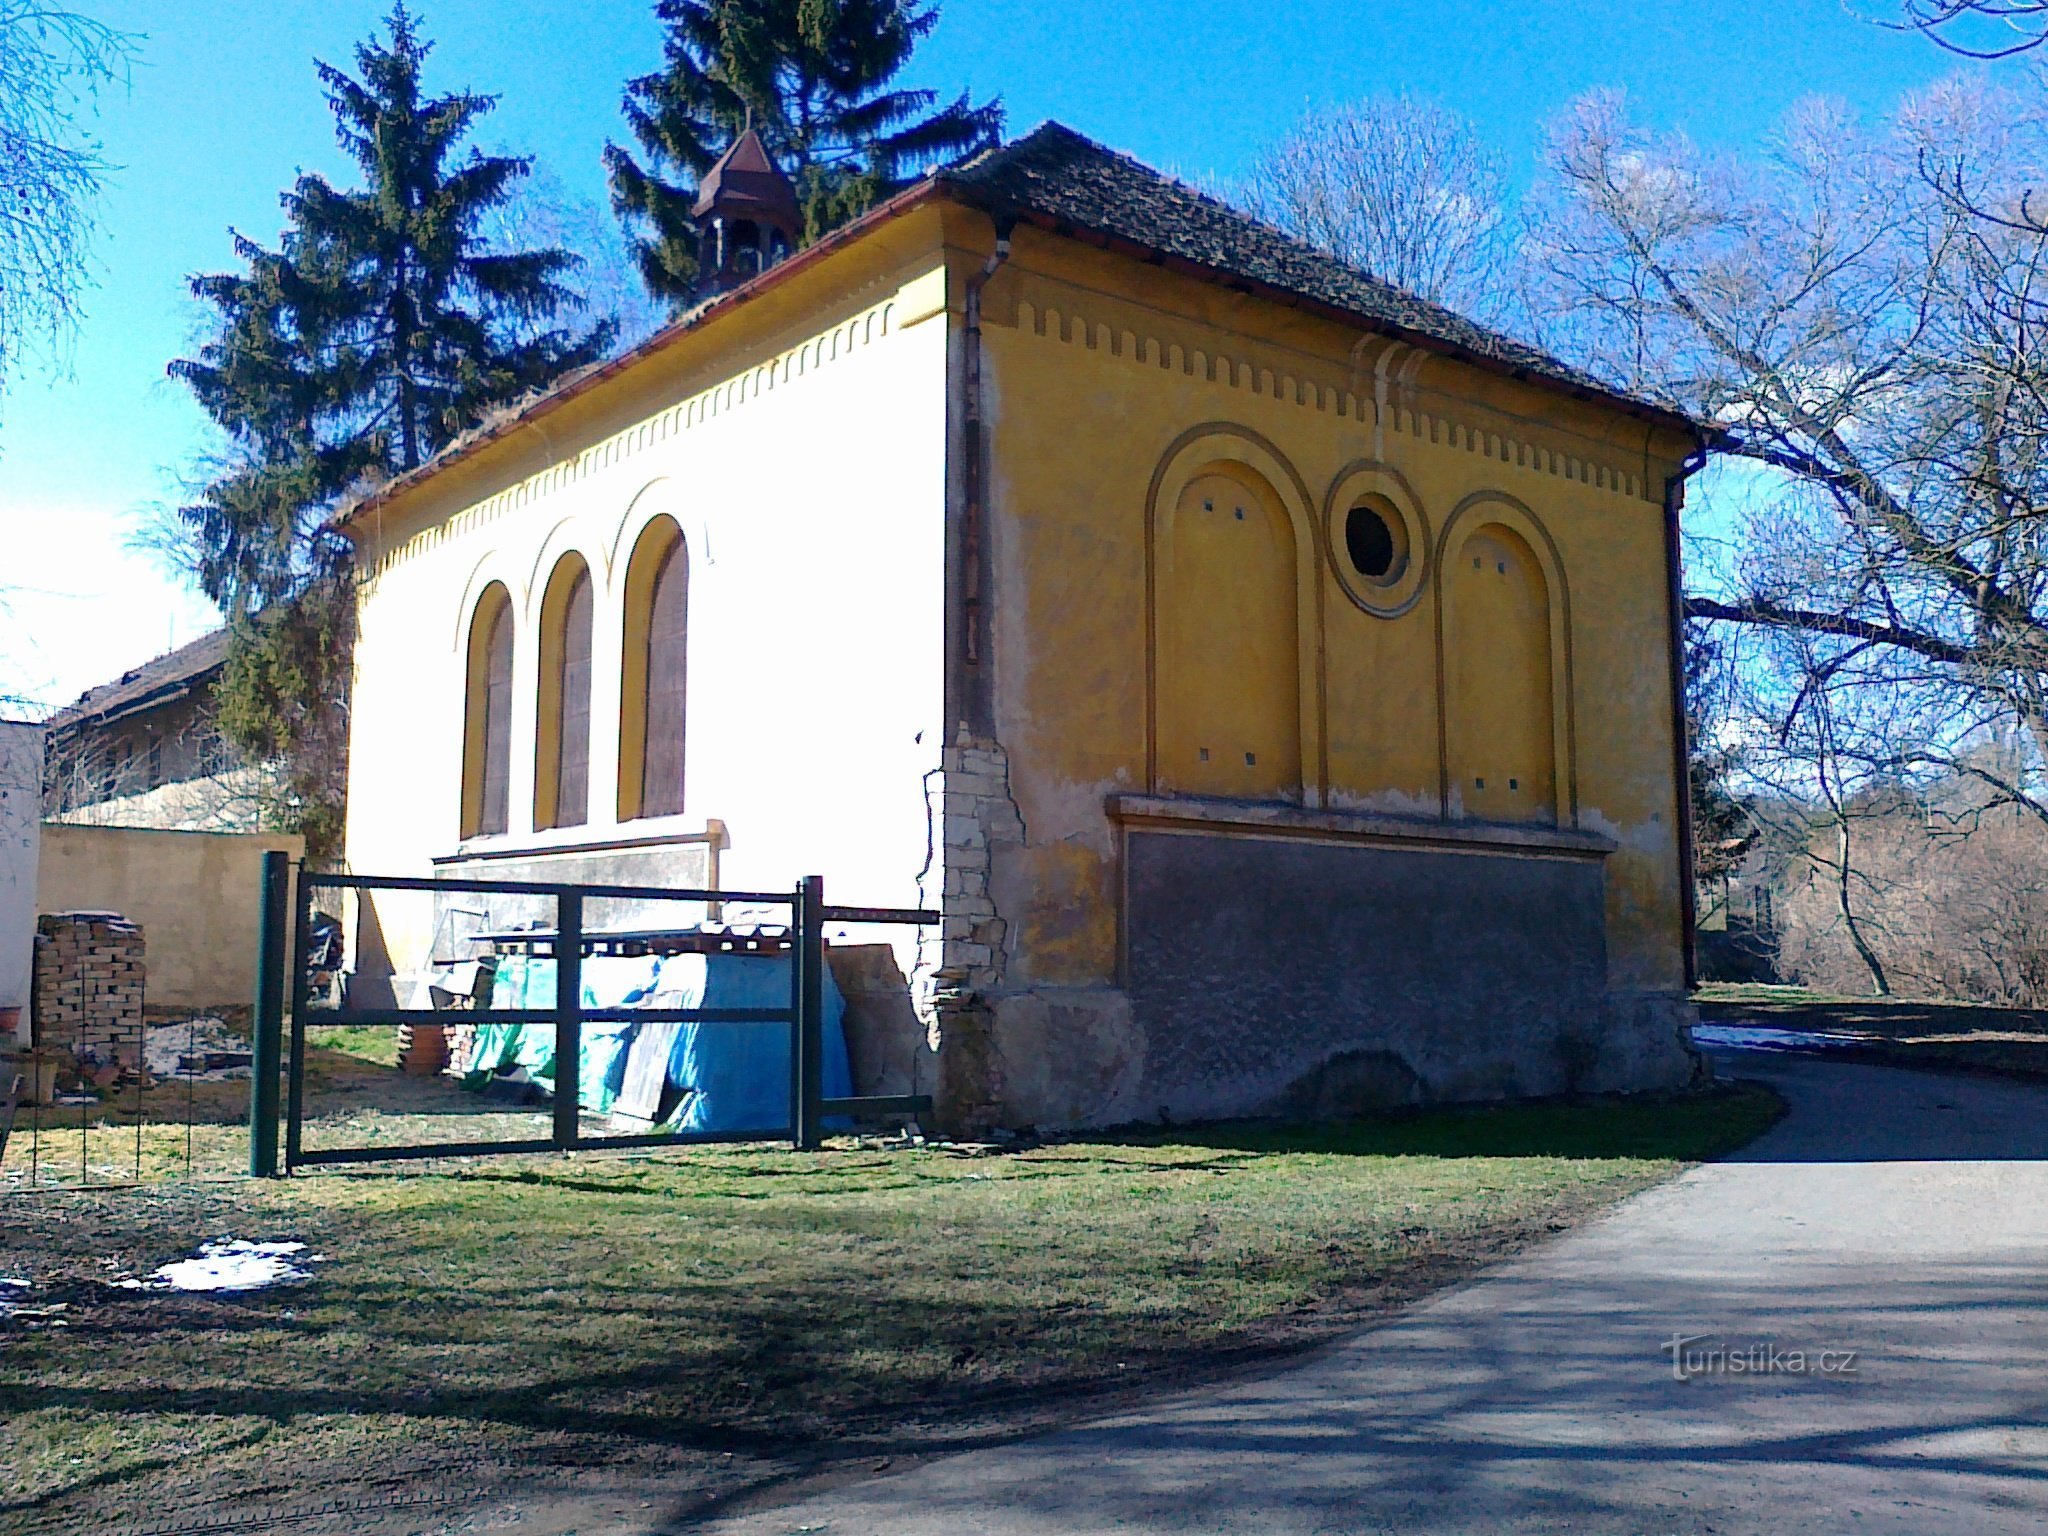 Συναγωγή στο Třebívlice.